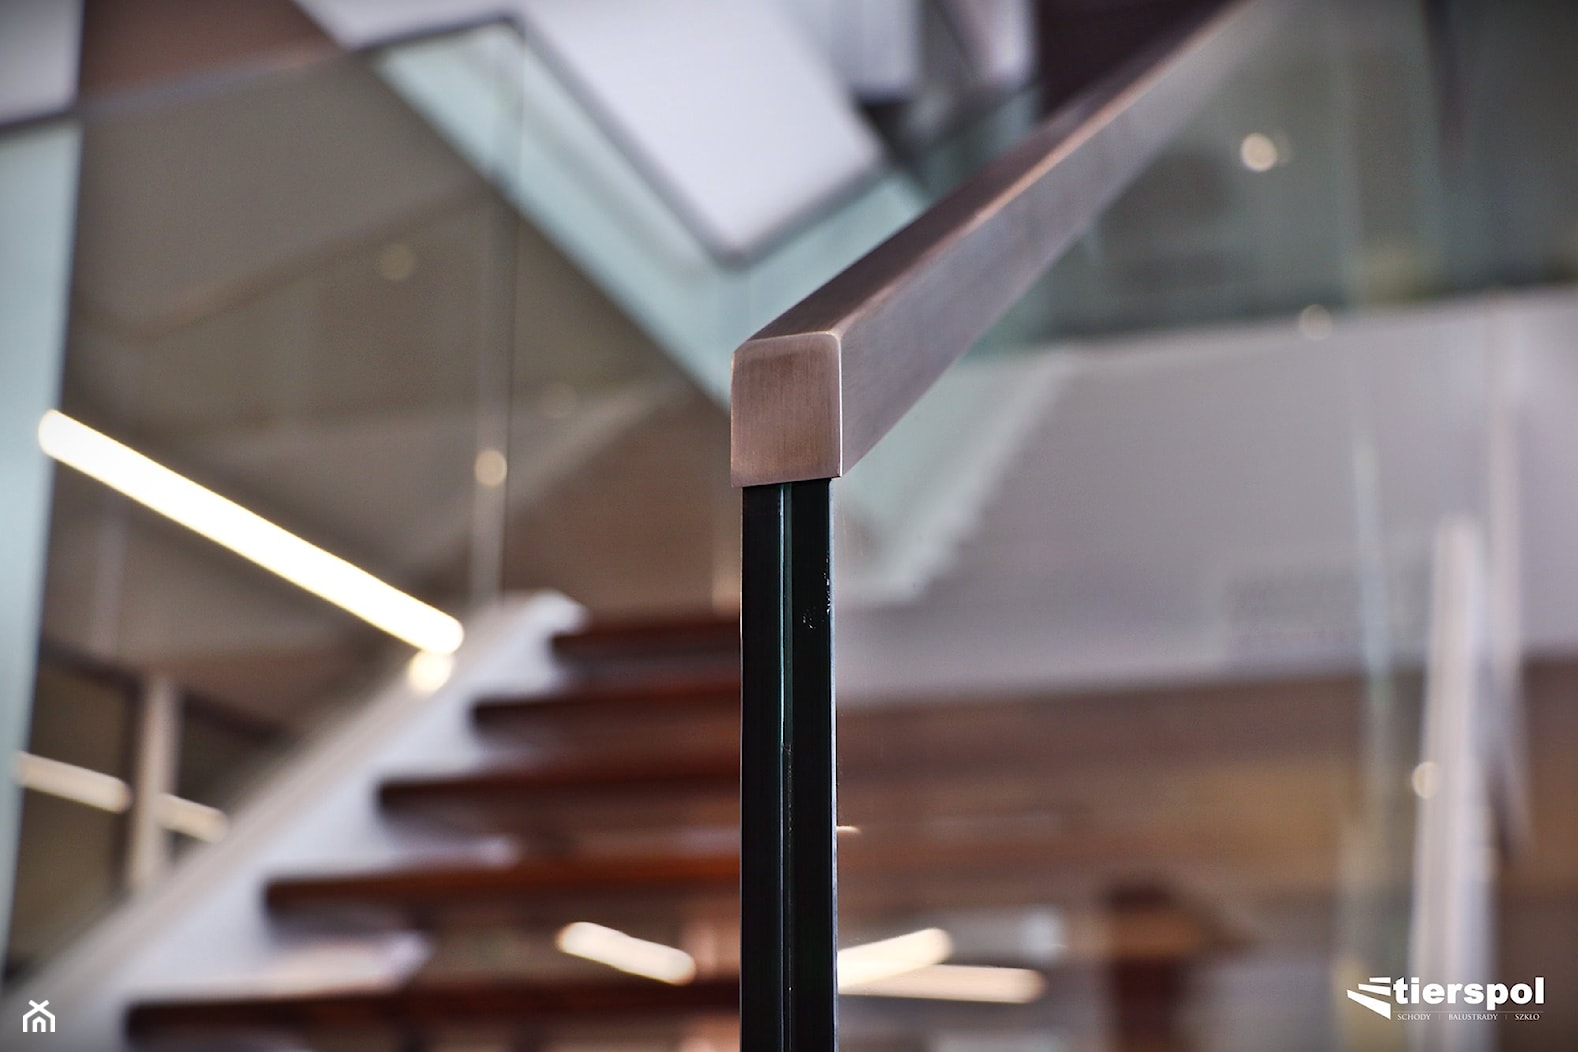 Schody metalowo-drewniane na dwóch belkach - zdjęcie od Tierspol producent schodów szklanych i całoszklanych - Homebook